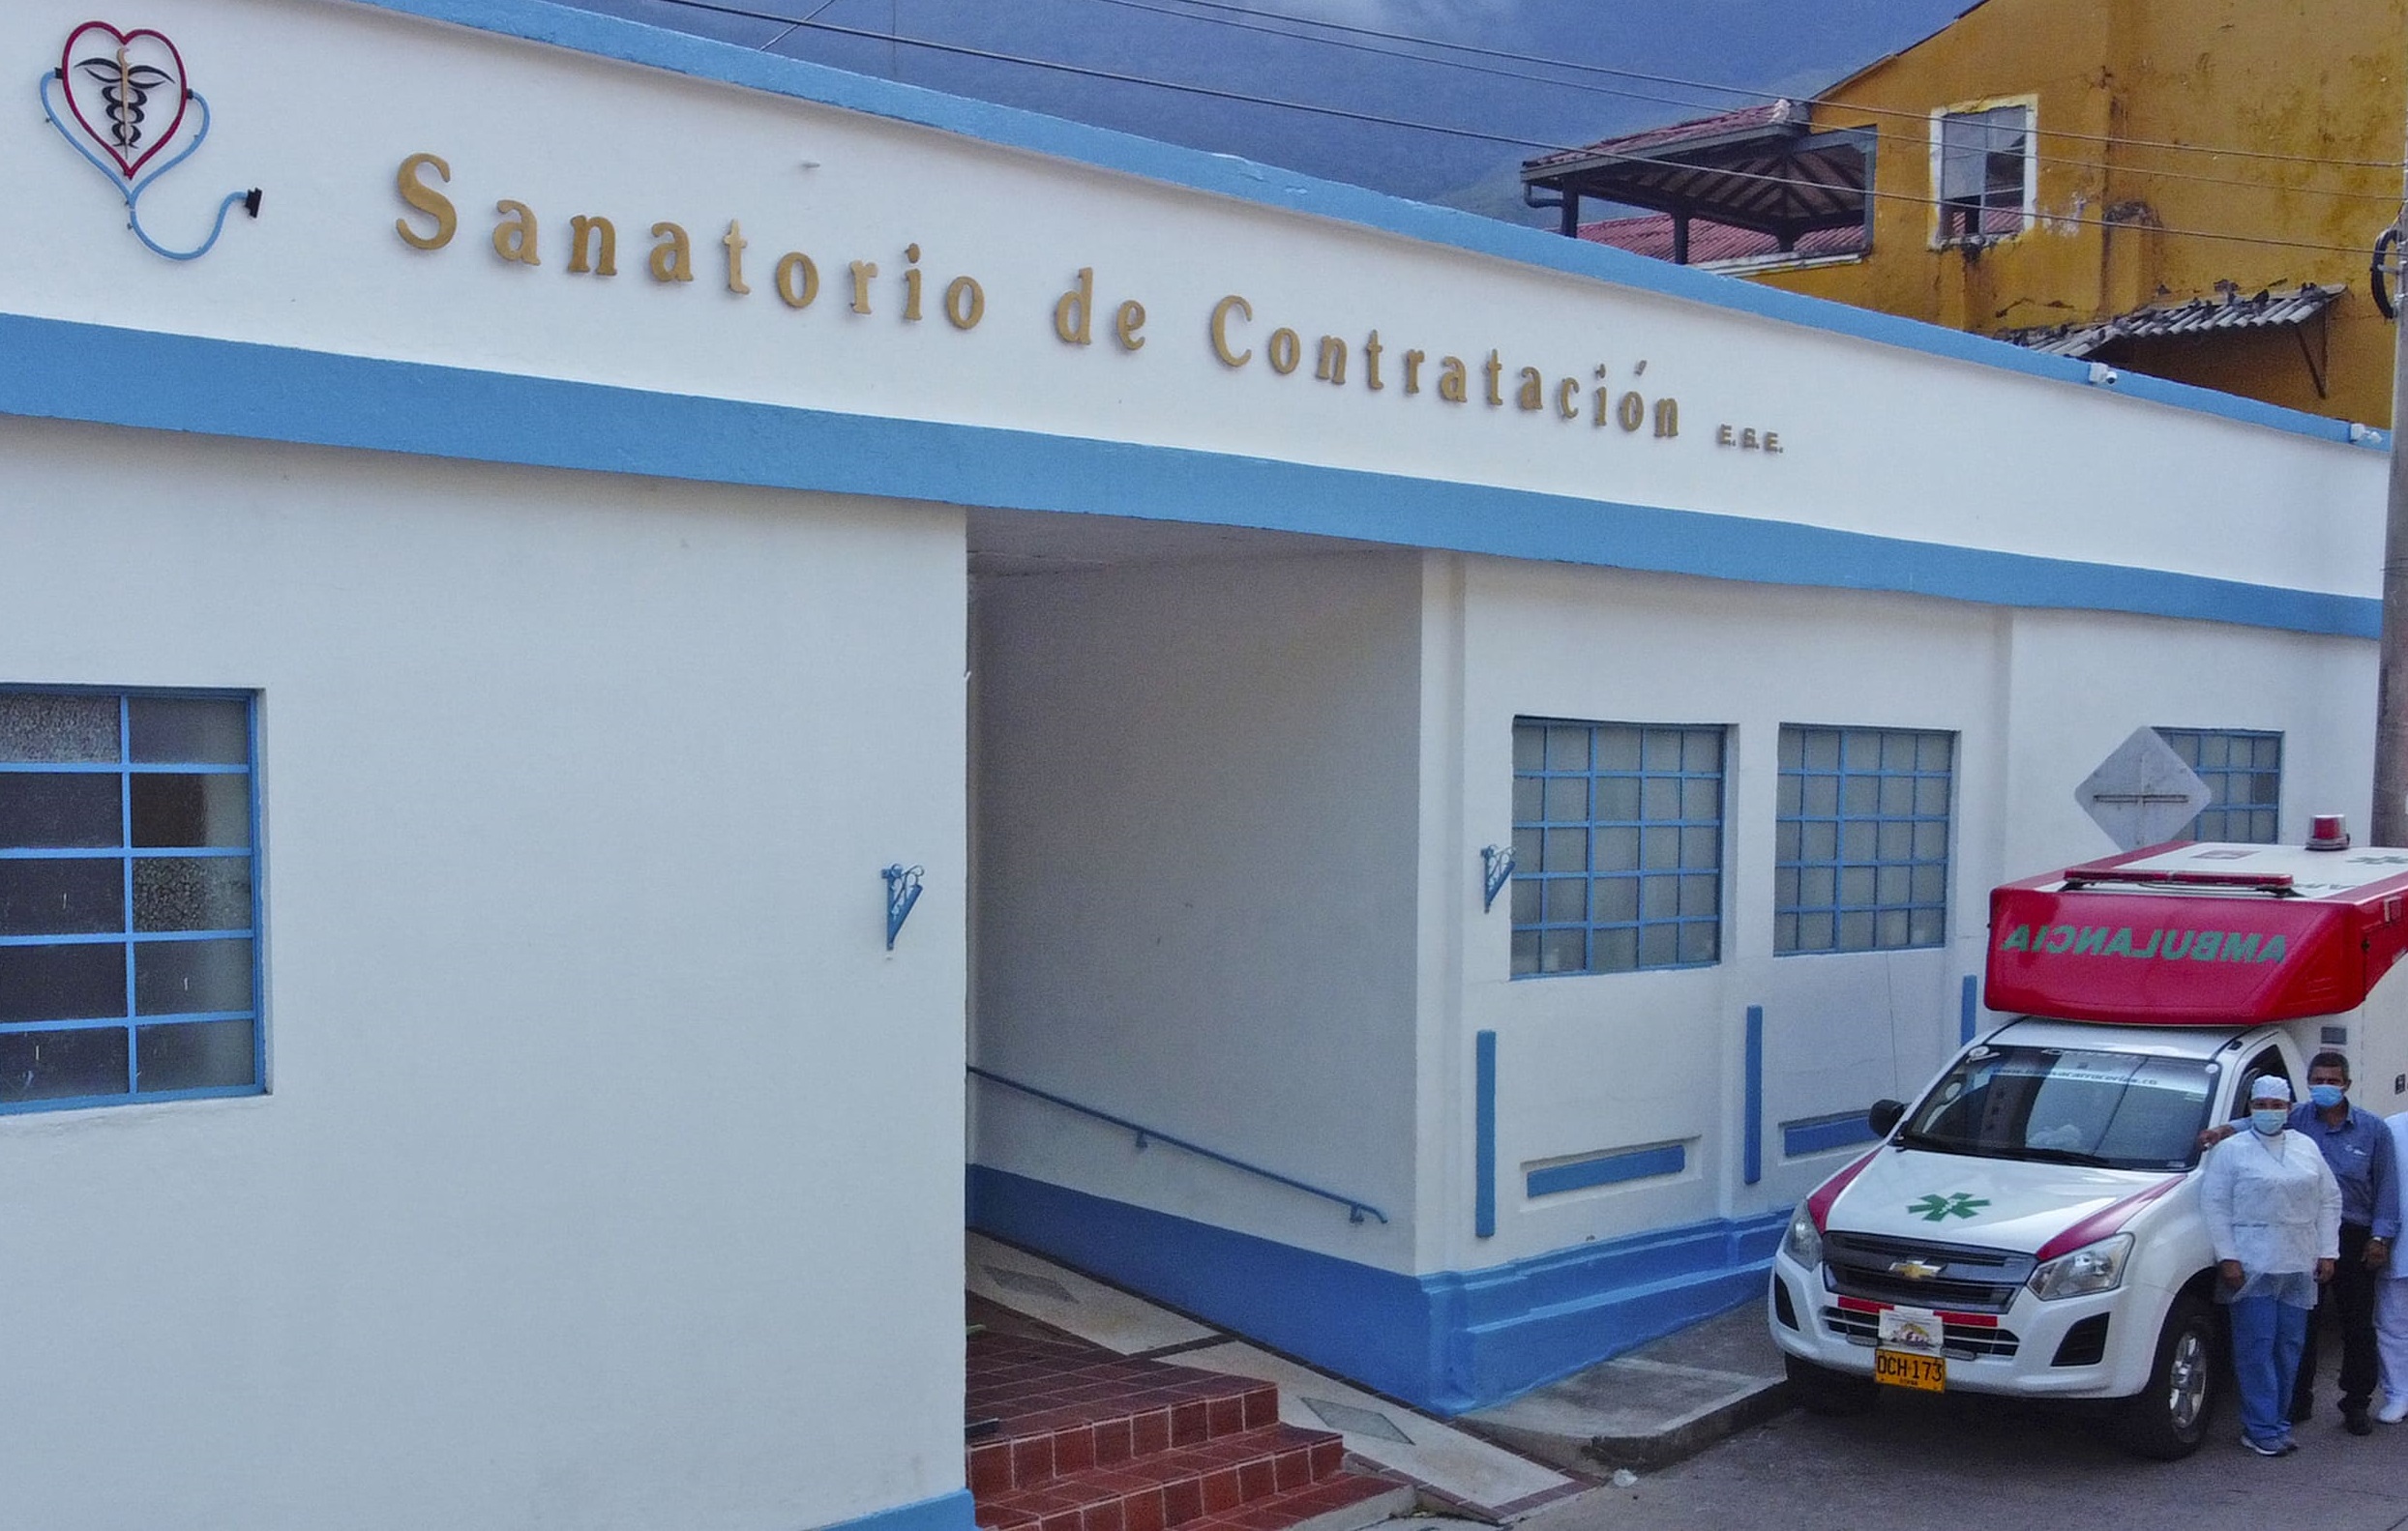 Historia clínica en el Sanatorio de Contratación, Santander